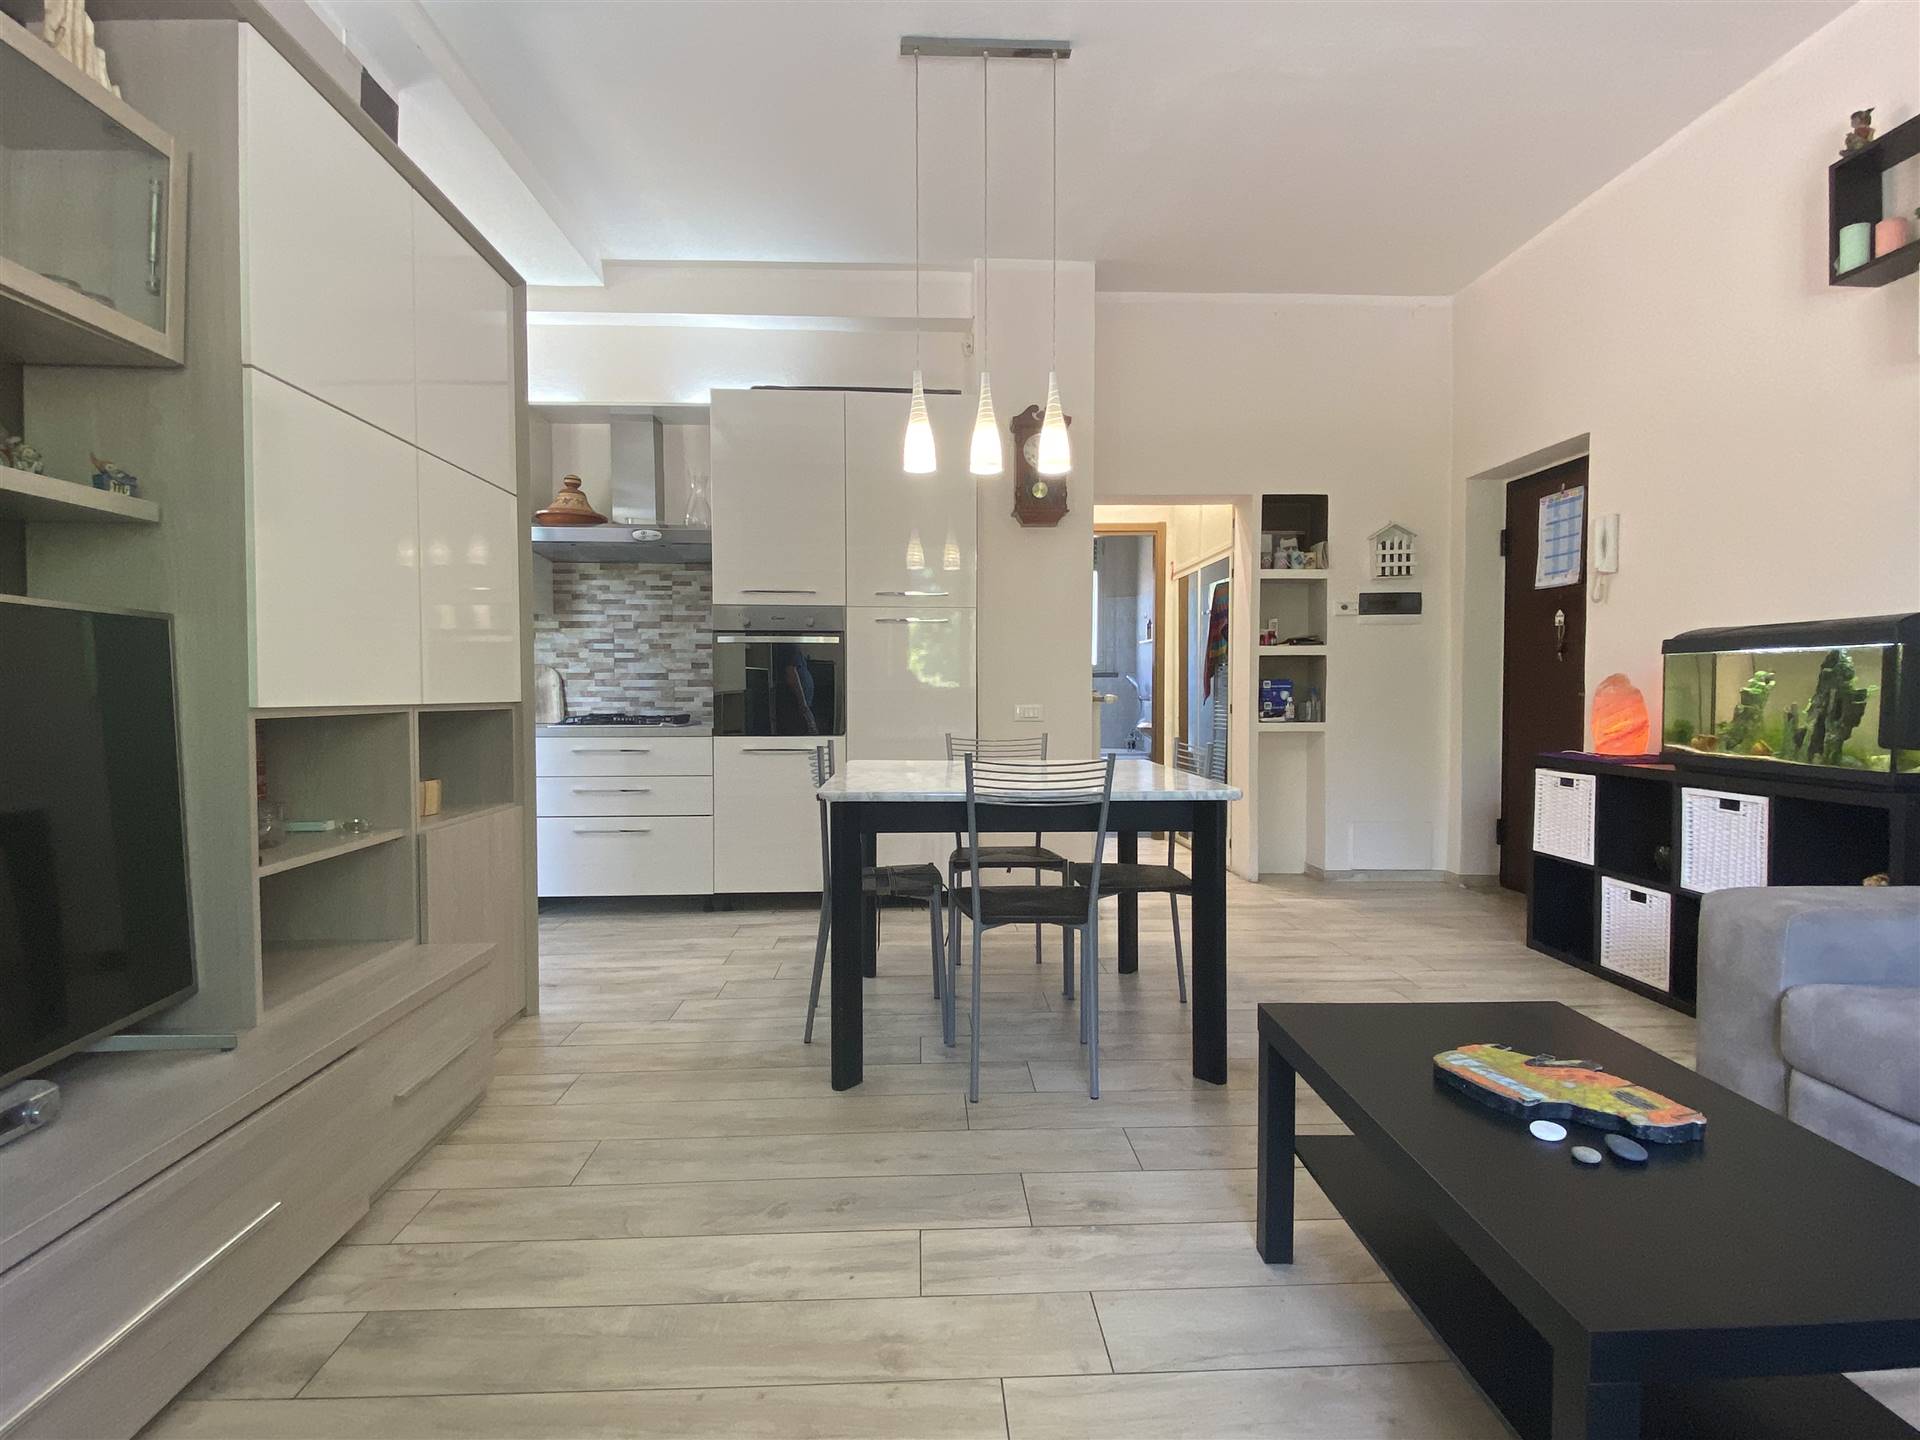 Appartamento in vendita a San Giorgio Piacentino, 2 locali, zona Località: SAN GIORGIO, prezzo € 73.000 | CambioCasa.it